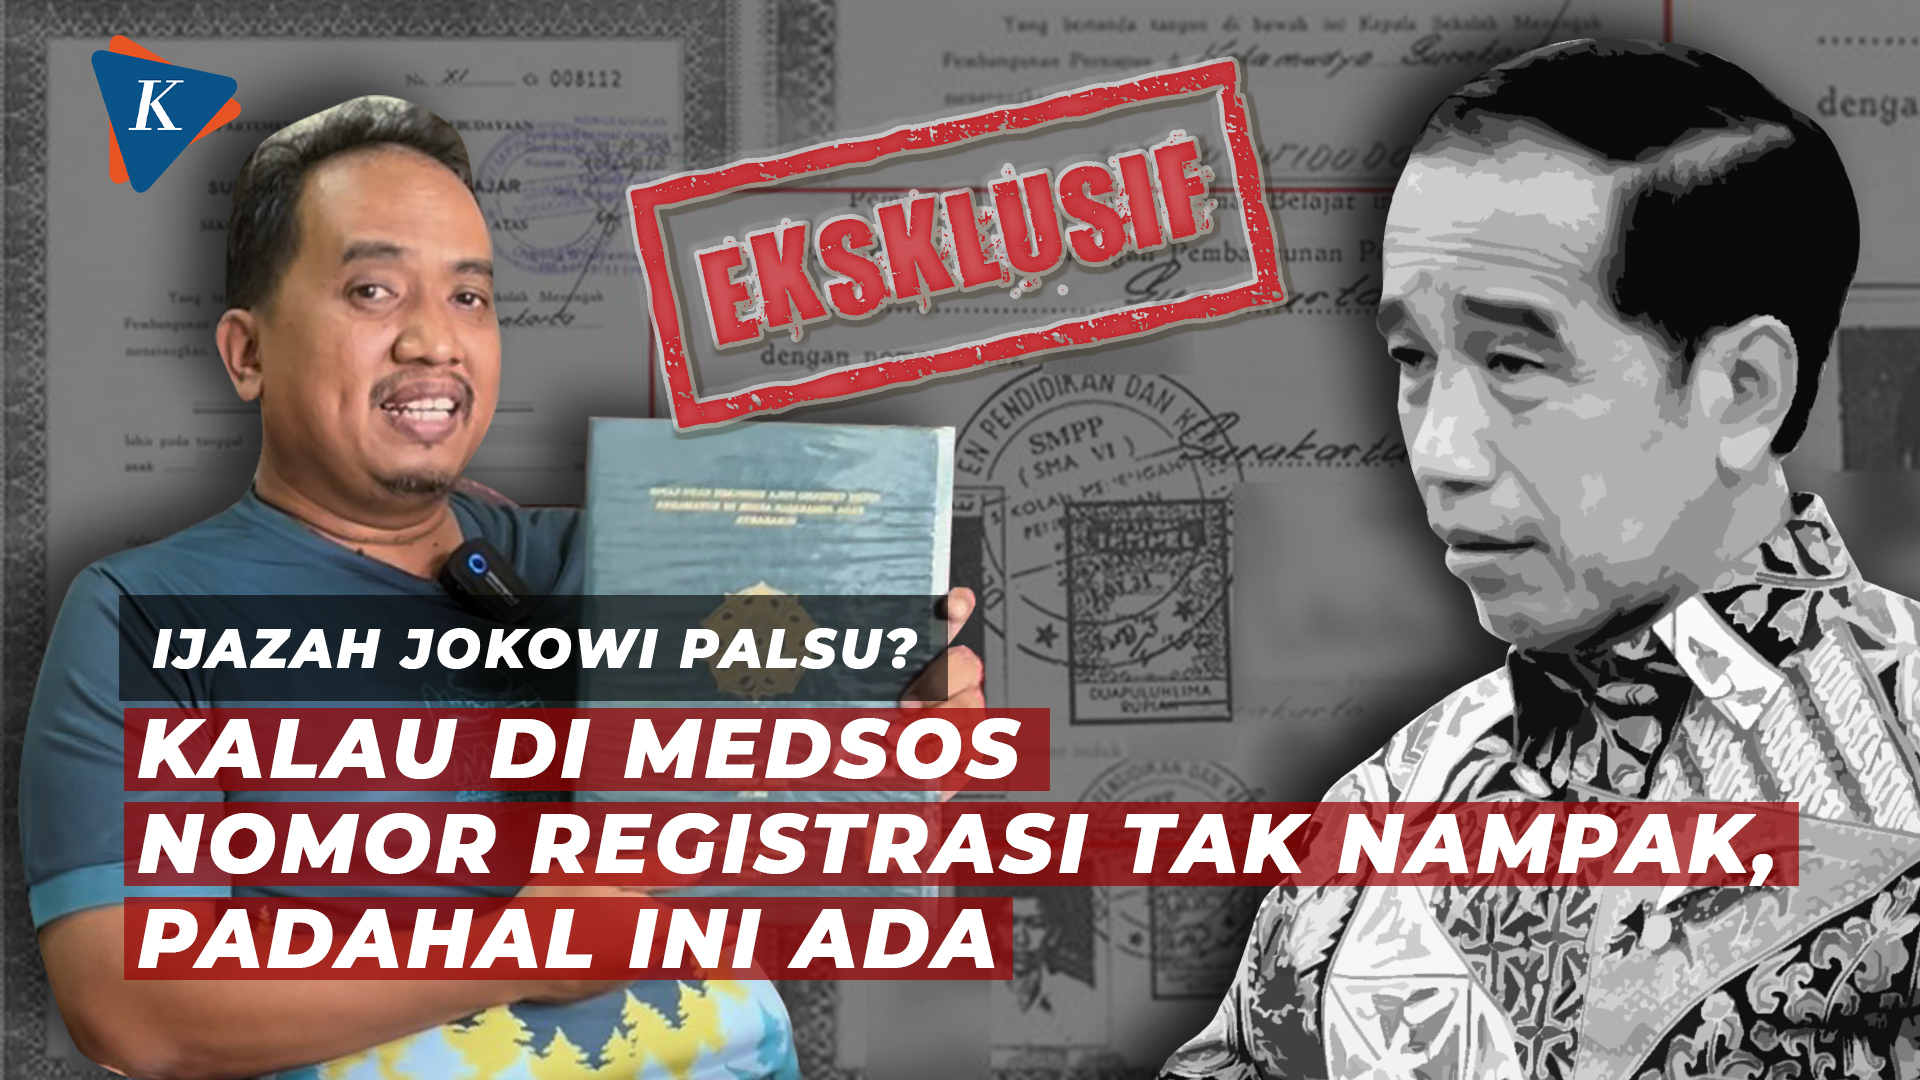 [EKSKLUSIF] Ini Penampakan Skripsi Jokowi di Fakultas Kehutanan UGM